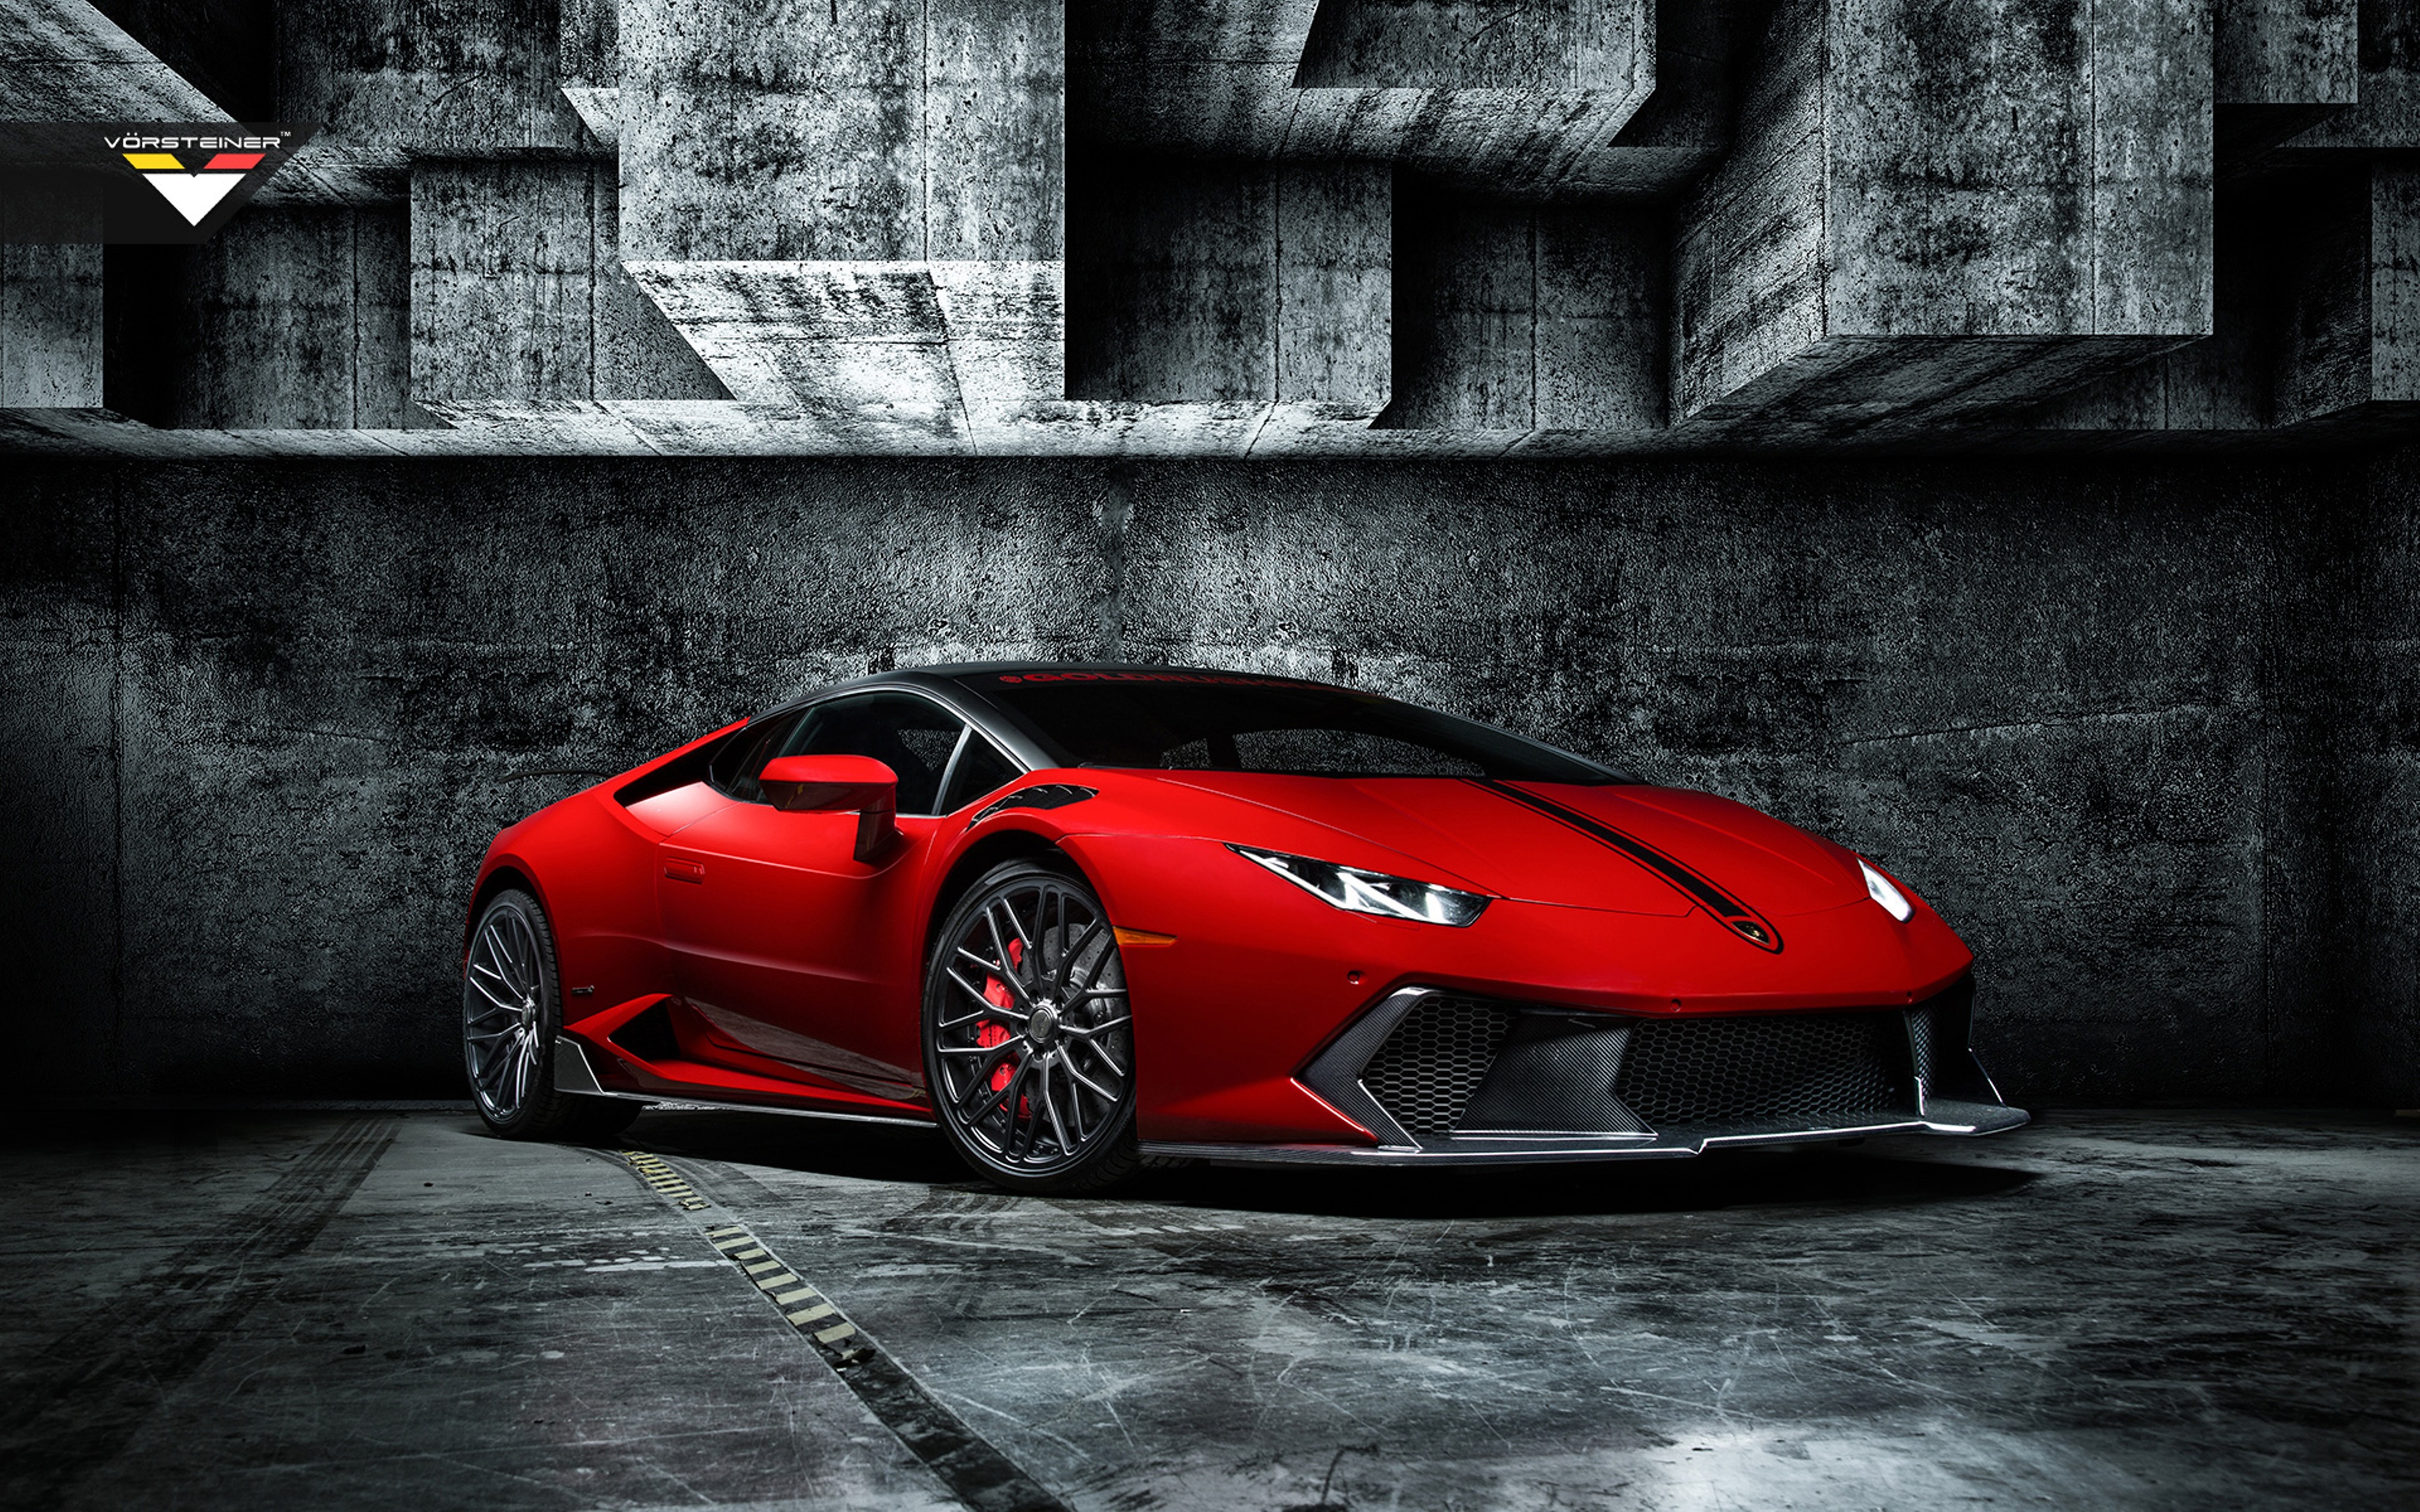 Red Lamborghini Huracan 4k, HD Cars, 4k Wallpapers, Images ...